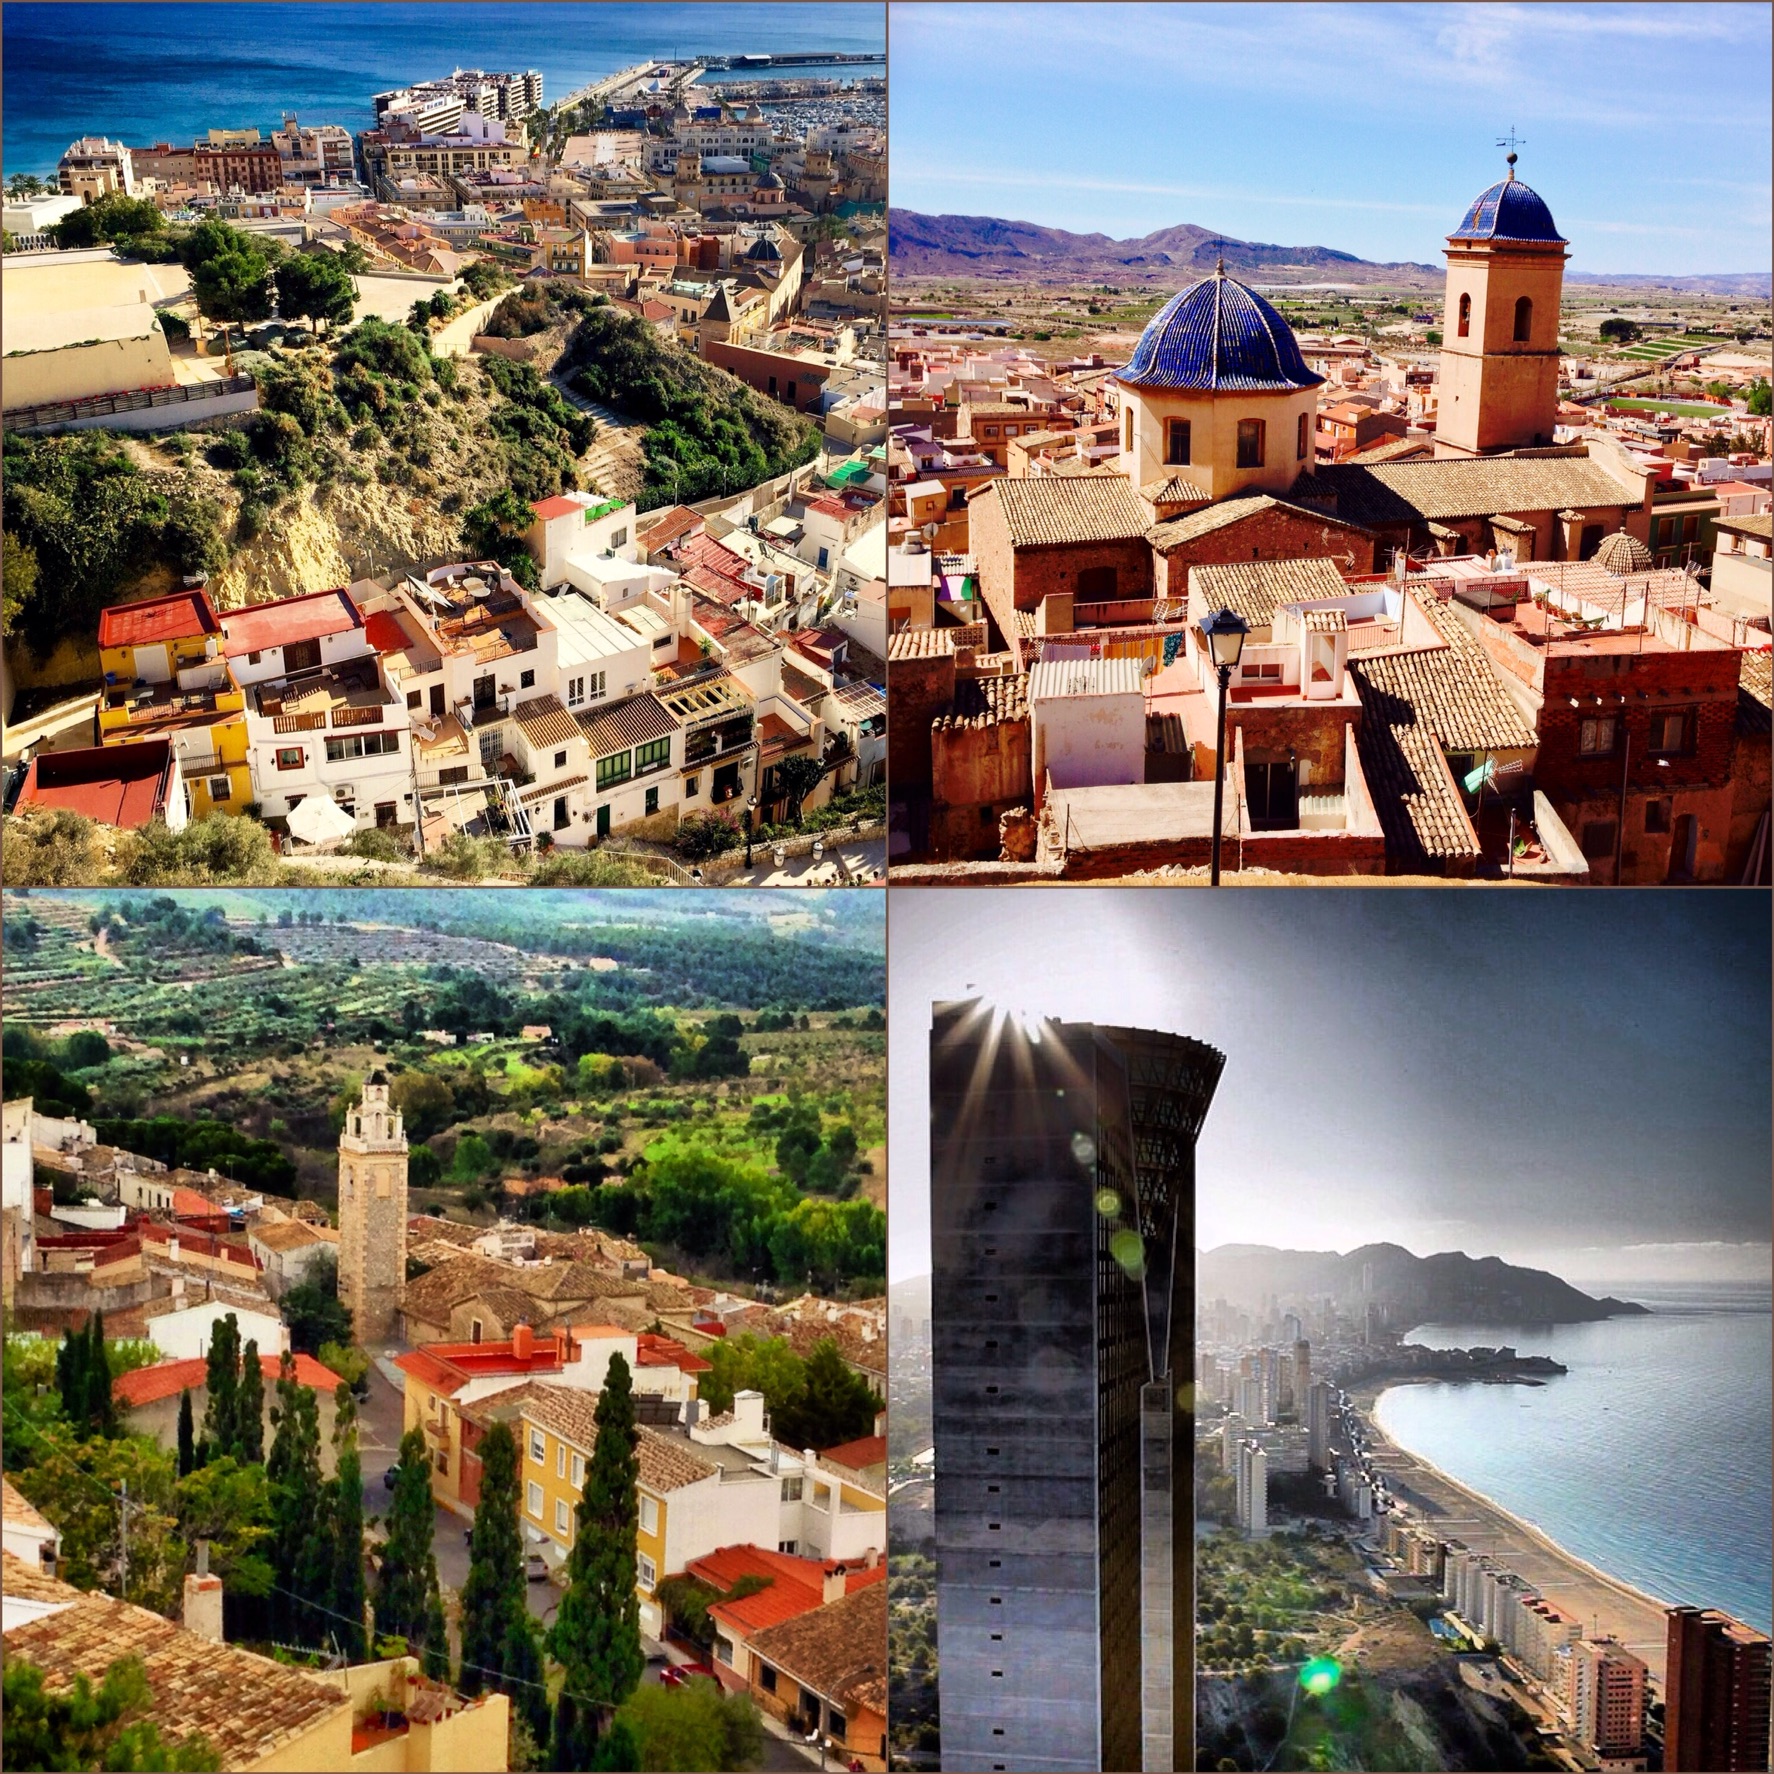 La riqueza de Alicante, sus ciudades y sus maravillosos pueblos